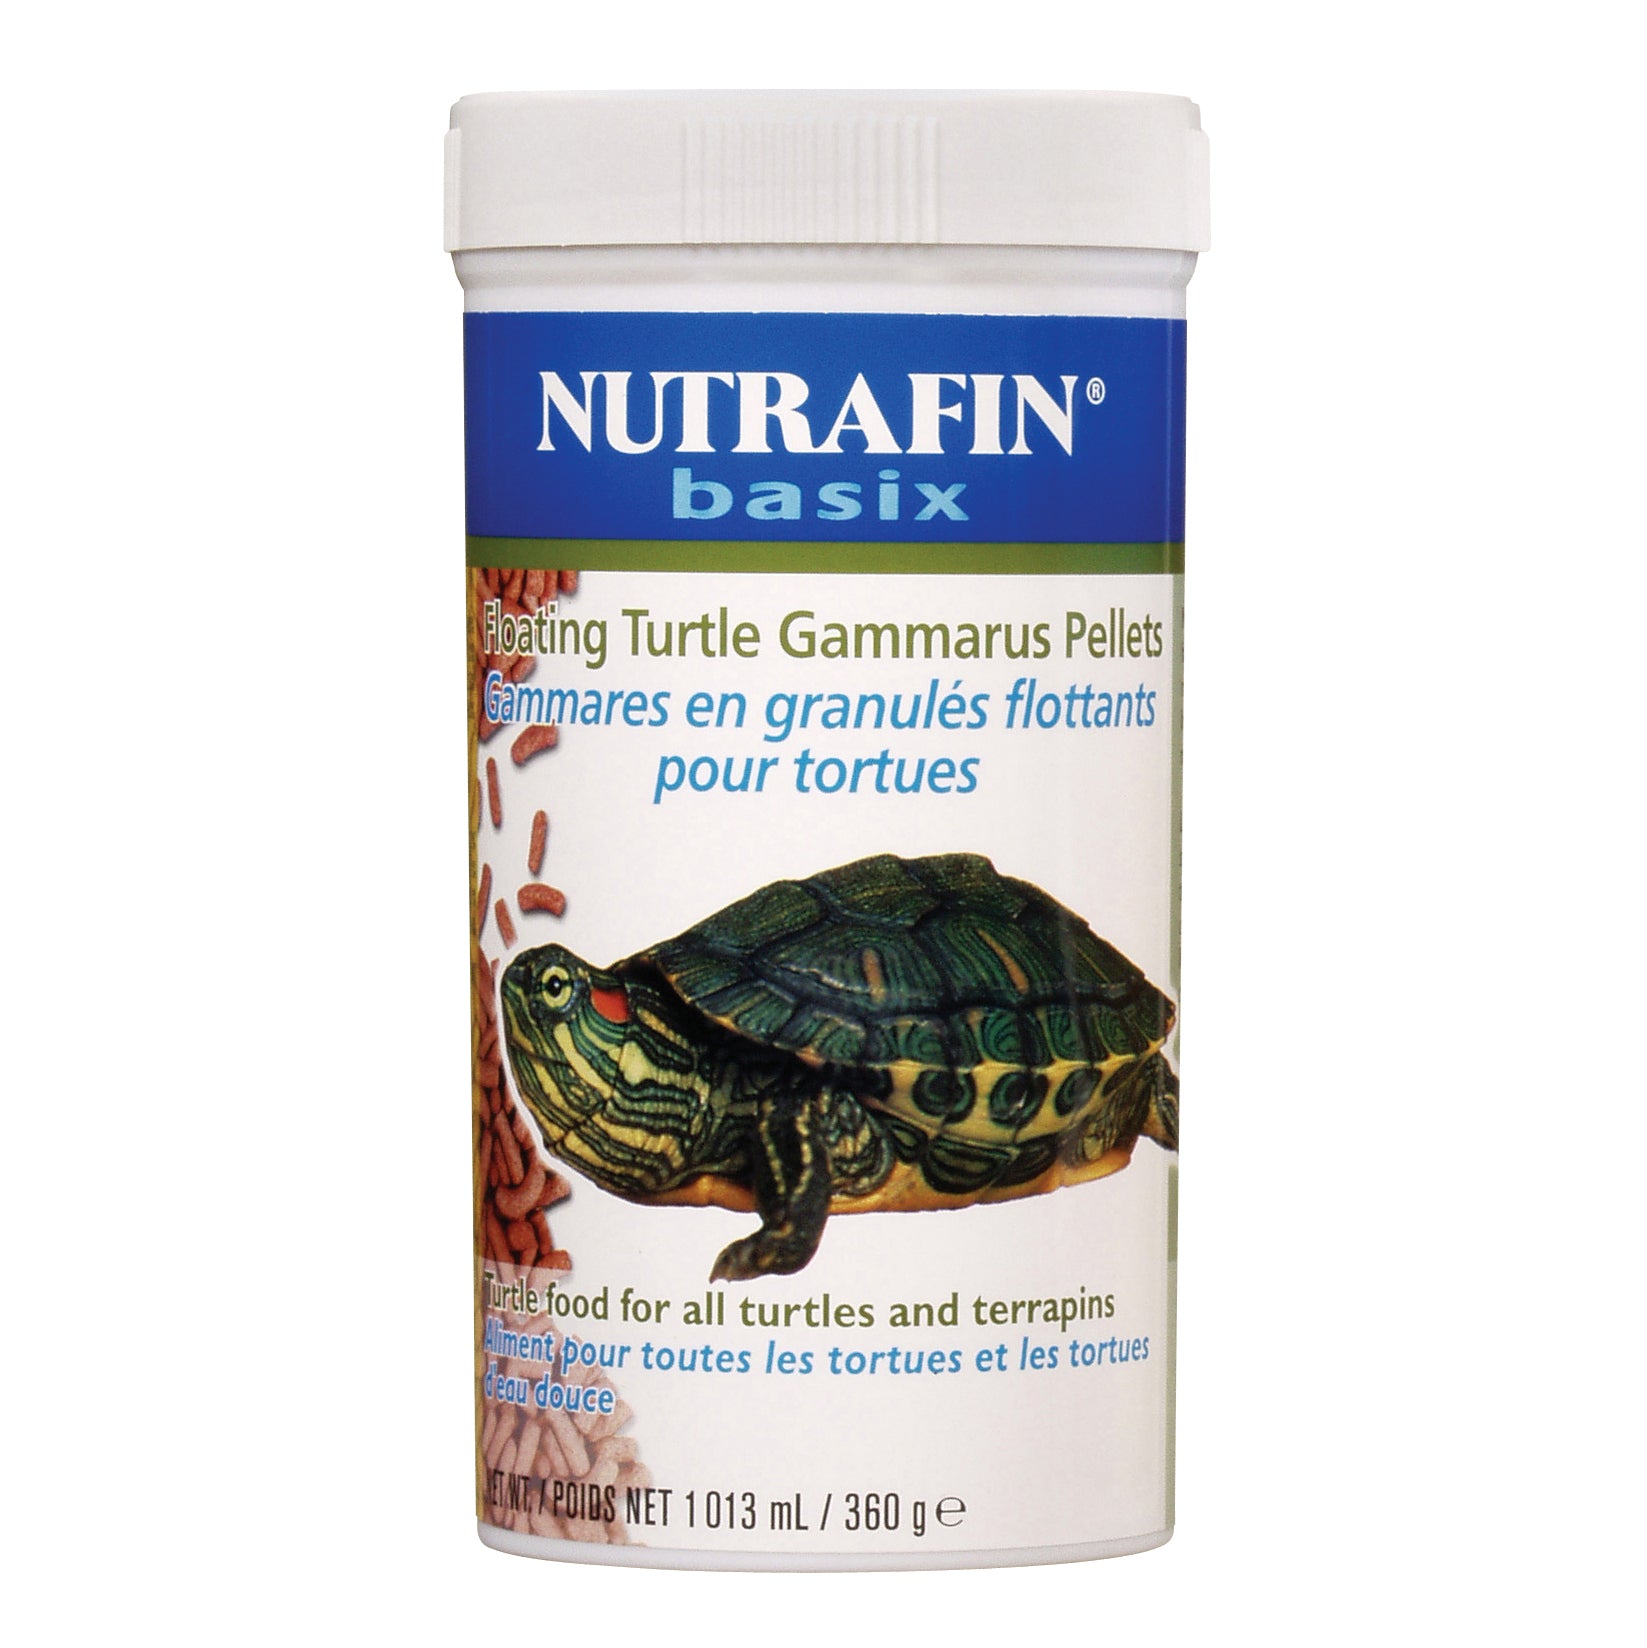 Gammares en granulés flottants Nutrafin basix pour tortues